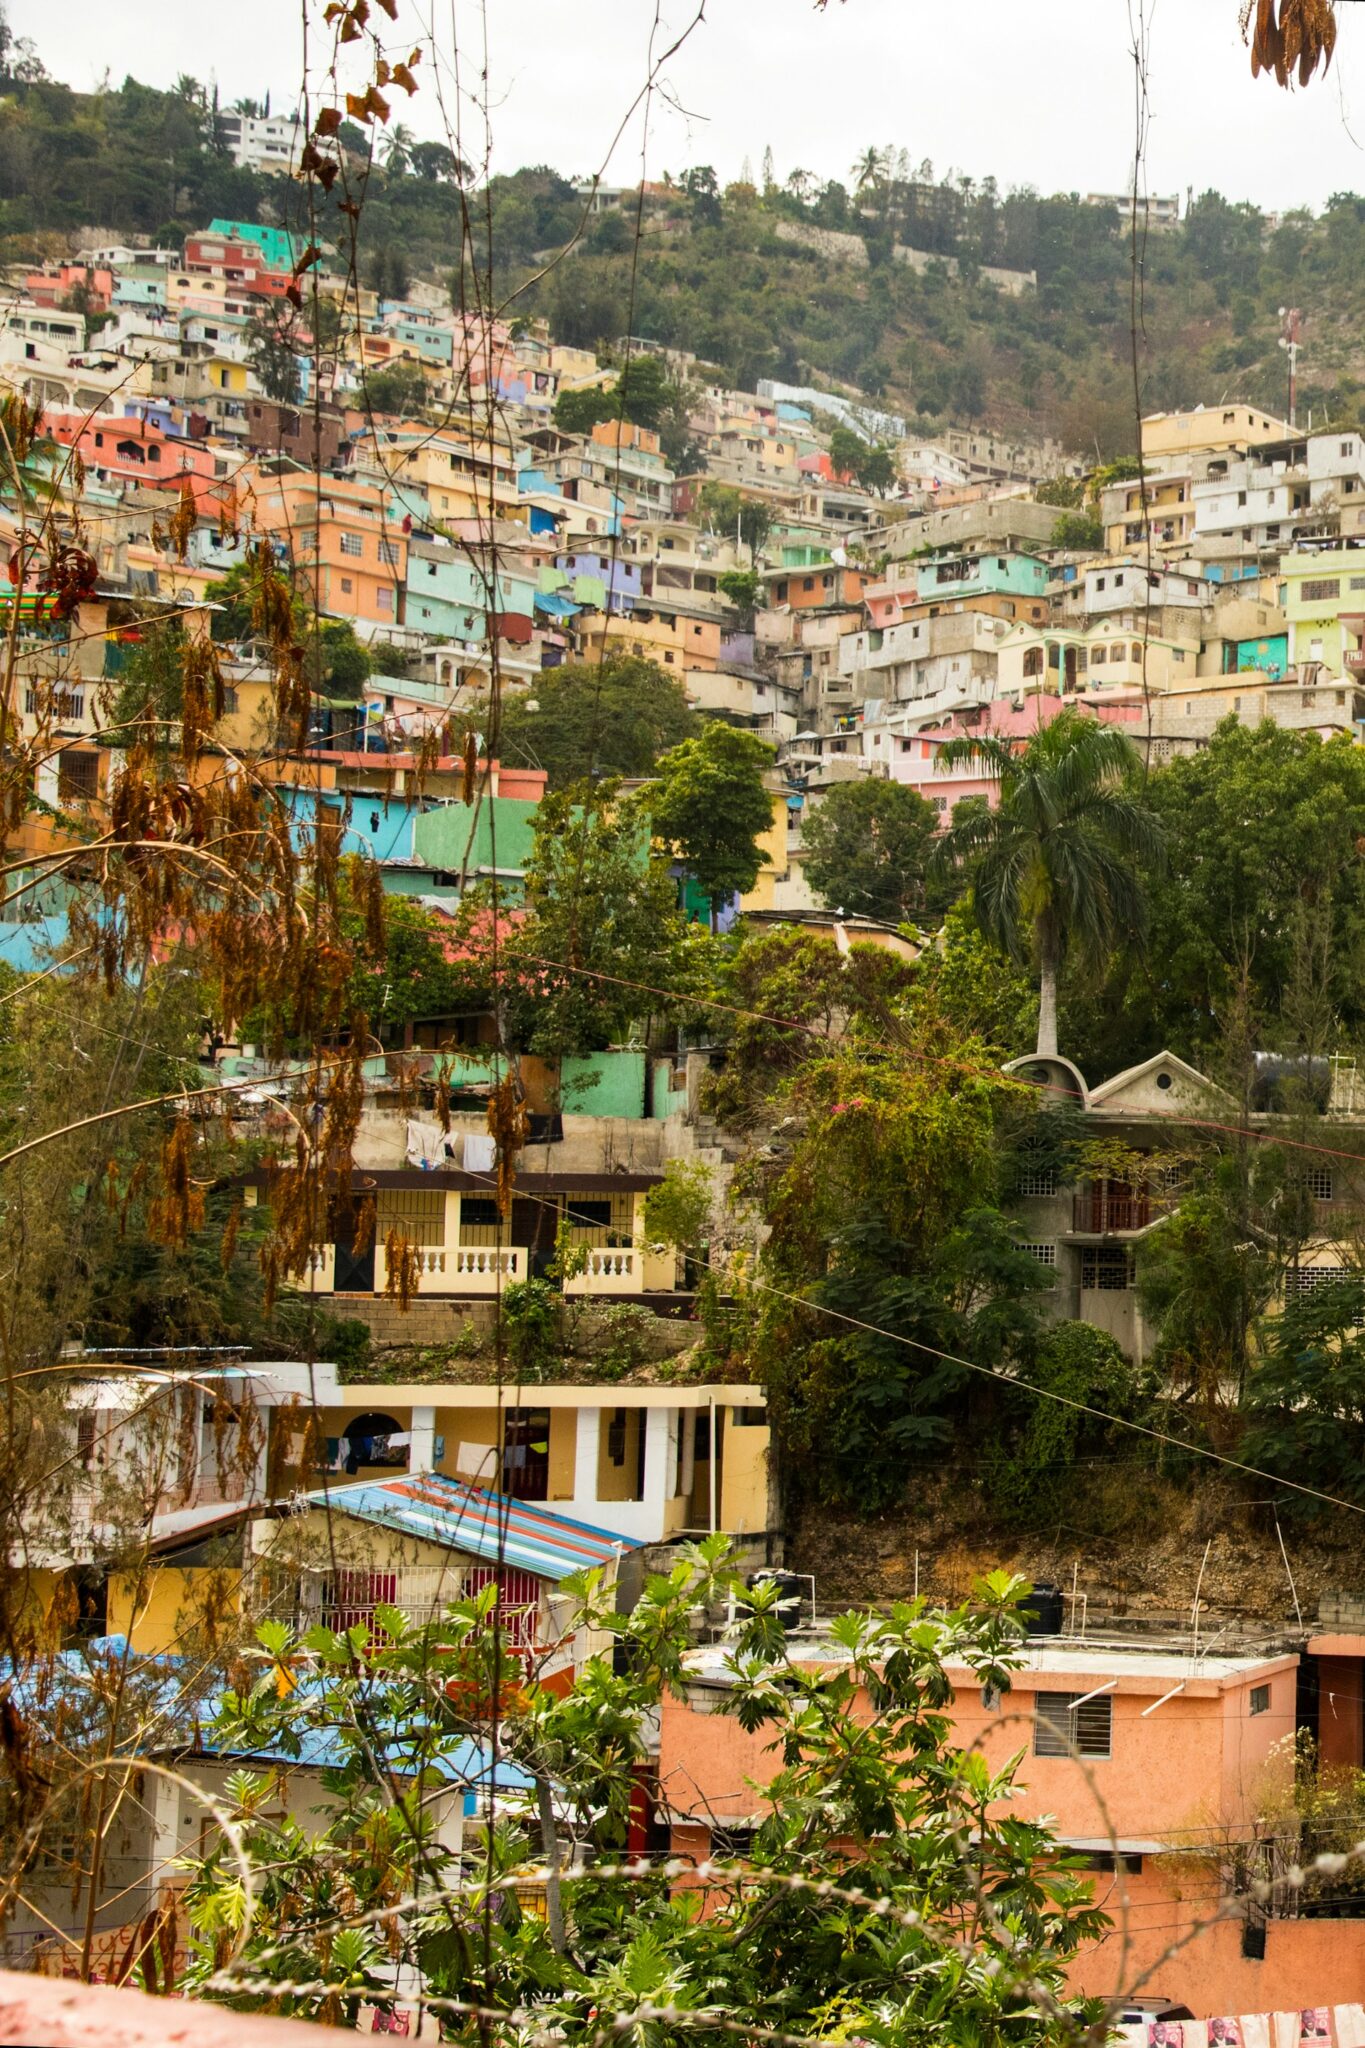 Homes on the Haitian hillside